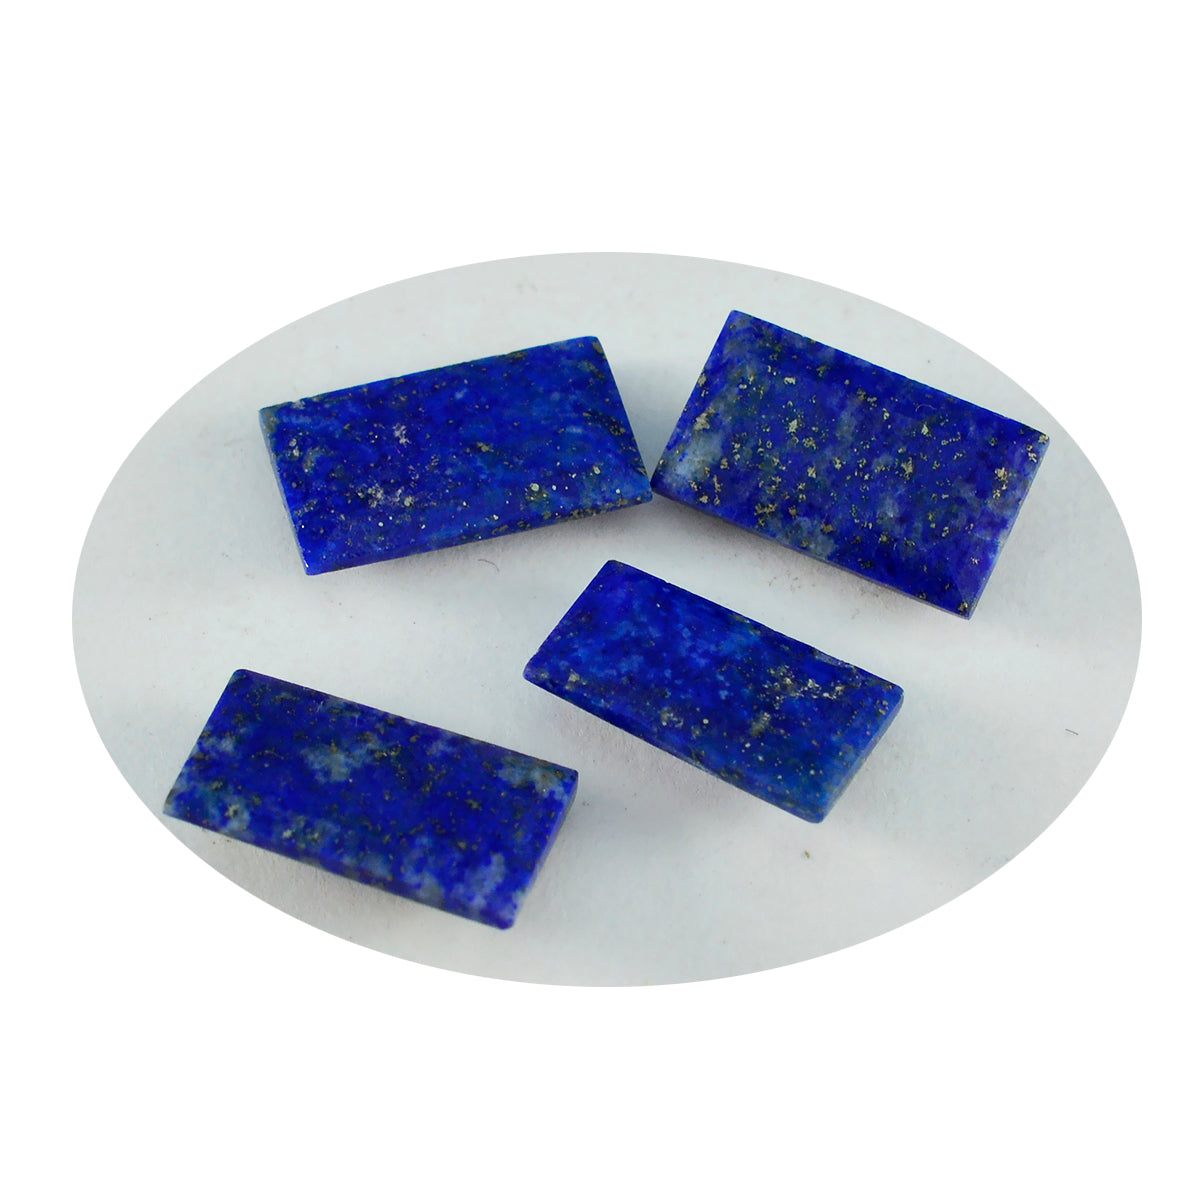 Riyogems 1 Stück echter blauer Lapislazuli, facettiert, 5 x 10 mm, Baguette-Form, Edelstein von fantastischer Qualität